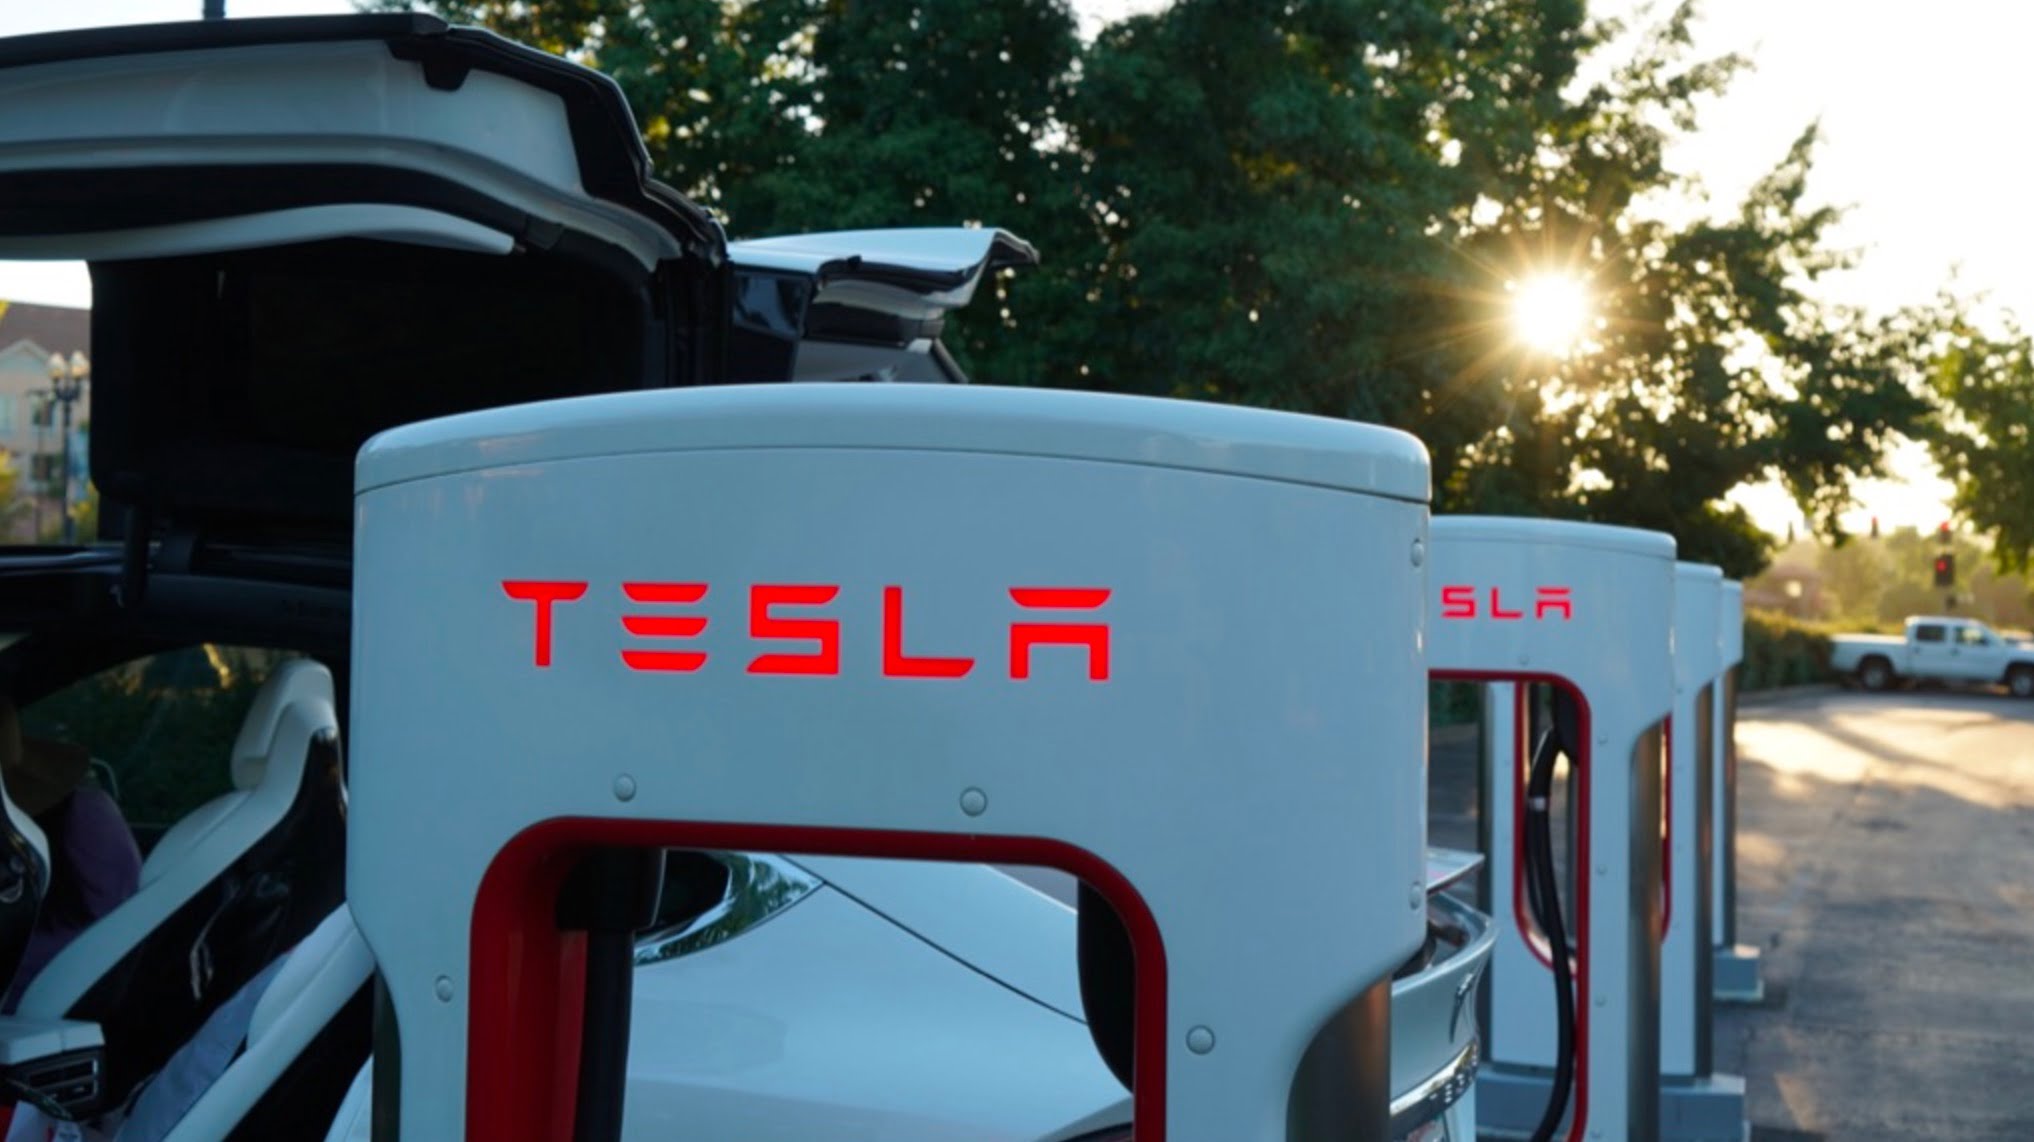 Tesla Model S Plaid premier essai routier: 0-60 mph en 1,99 seconde avec le mode drag strip est fou